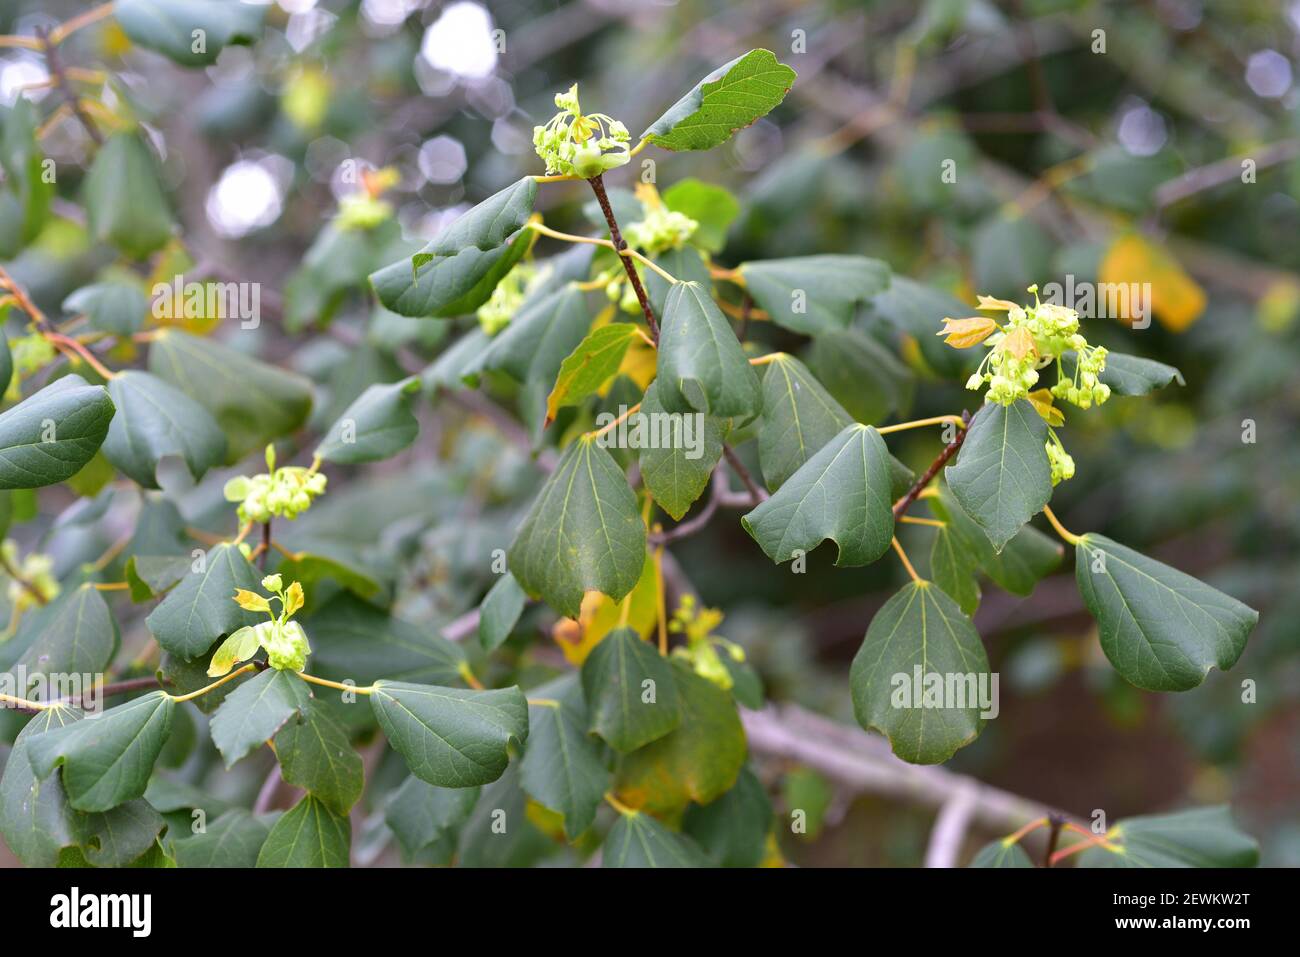 L'érable syrien (Acer obtusifolium) est un petit arbre à feuilles persistantes originaire de la région de la Méditerranée orientale. Fleurs et feuilles. Banque D'Images